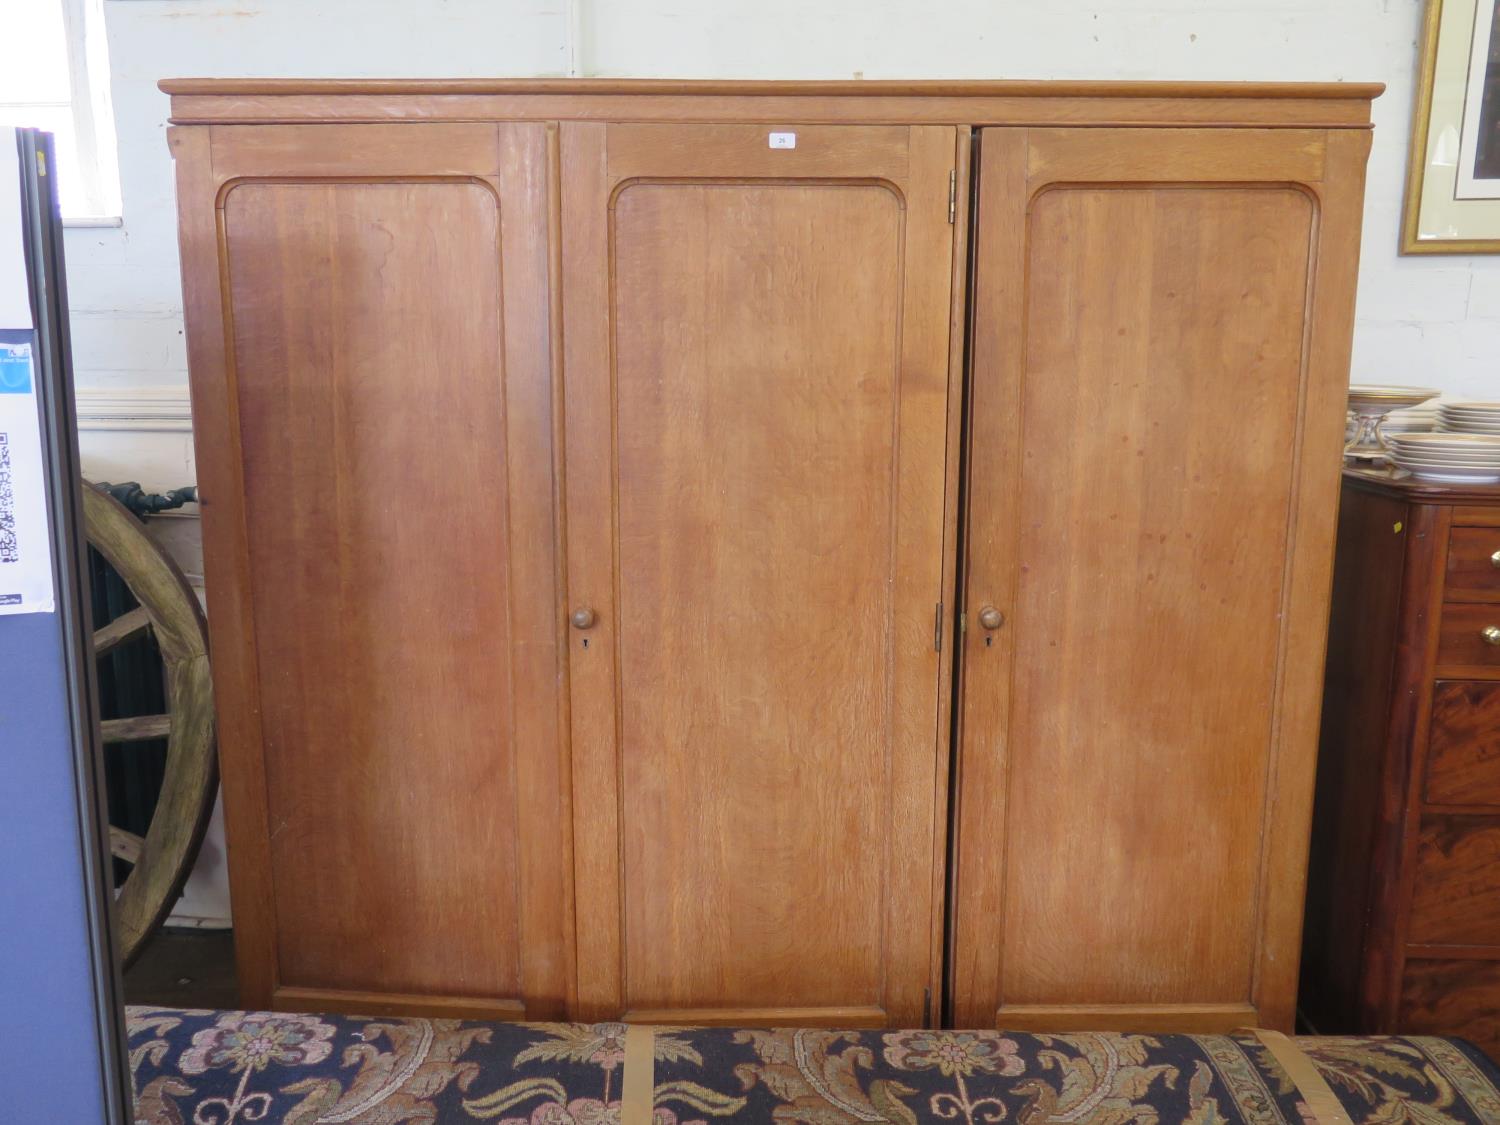 An oak three door linen press and wardrobe, the twin doors enclosing drawers, the third door